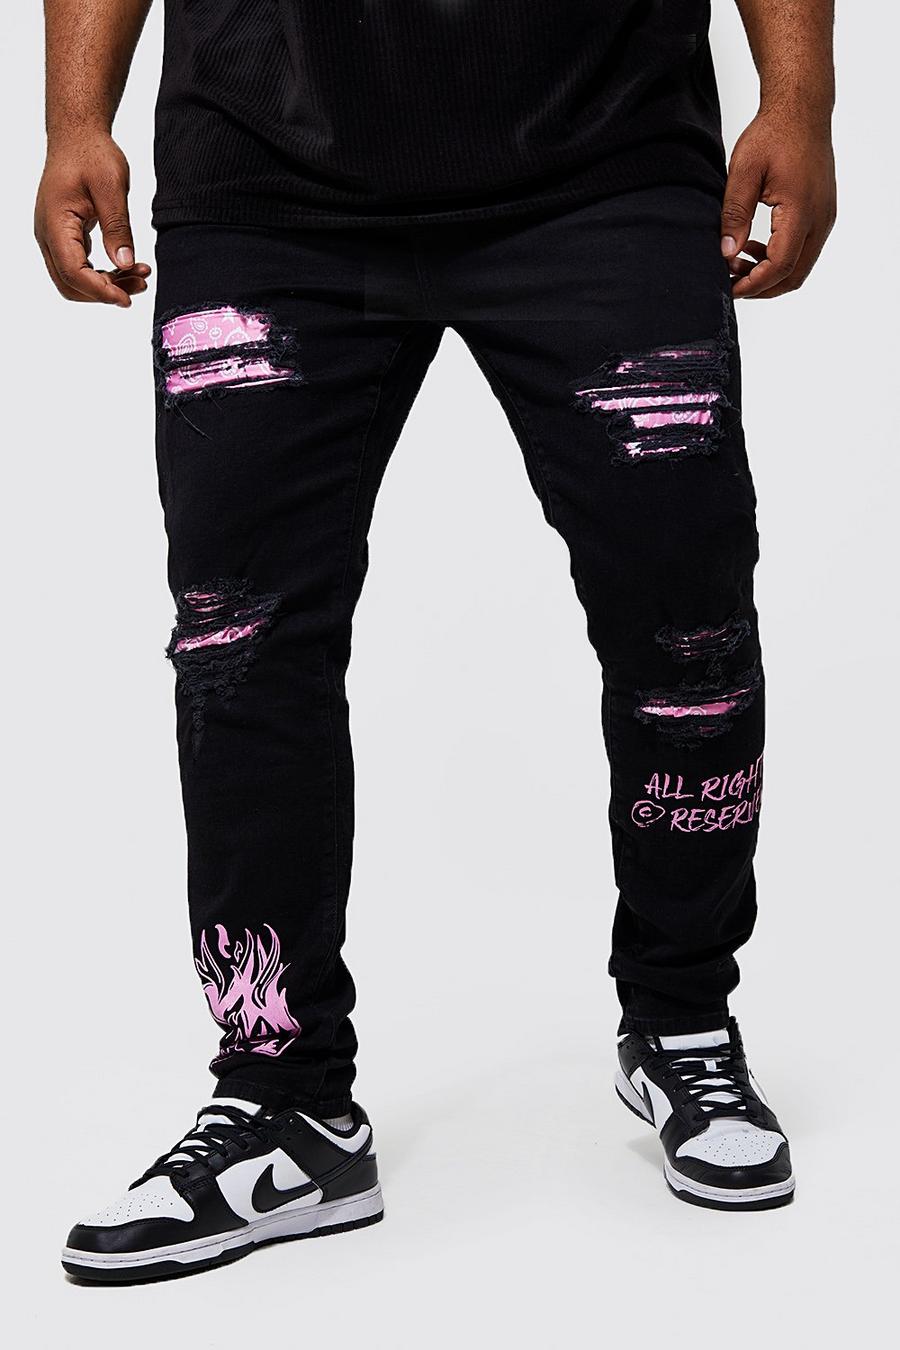 Black noir Plus Skinny Bandana Rip Graffiti Jeans